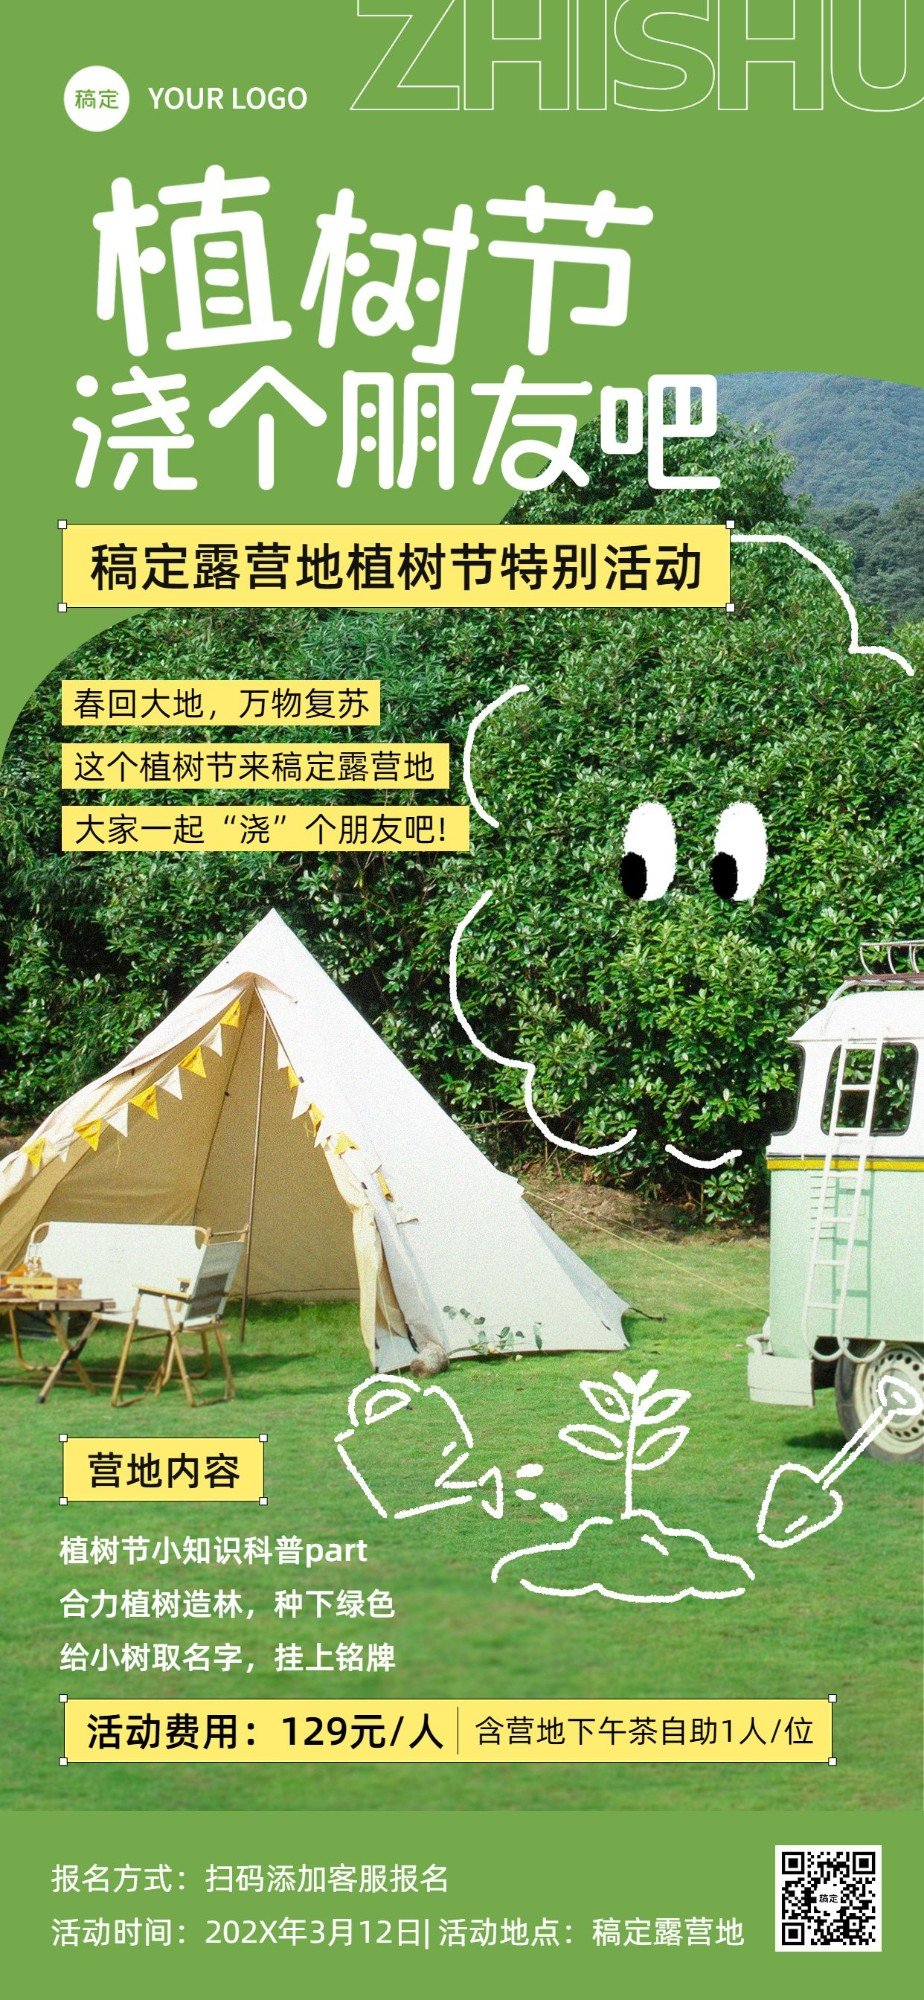 旅游出行植树节露营地活动宣传全屏竖版海报预览效果